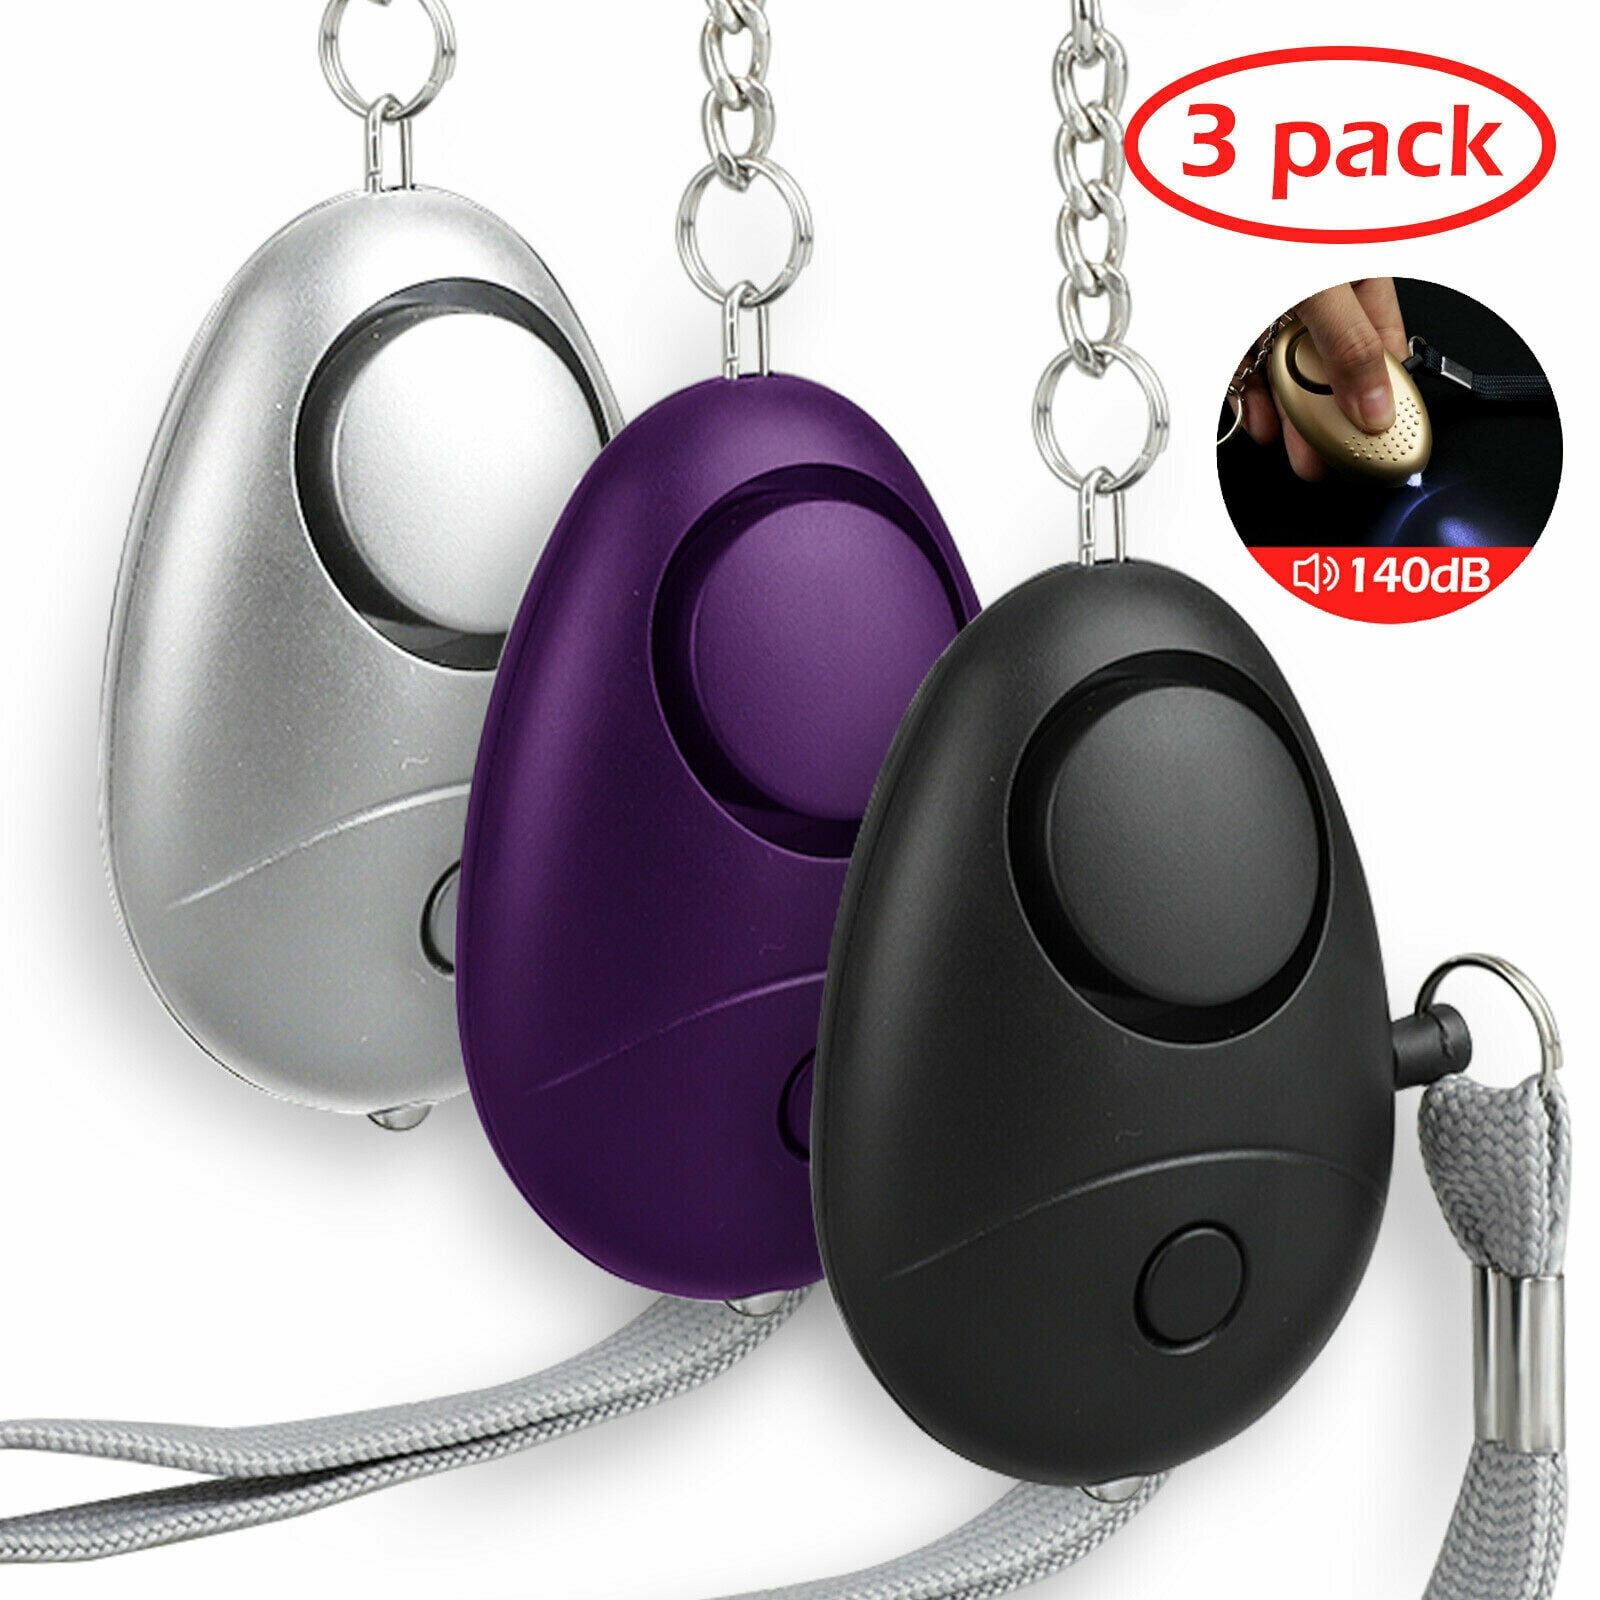 Personal Alarm keychain for WOMEN/KIDS siren 140 DB LOUD & LED light 4 PACK 